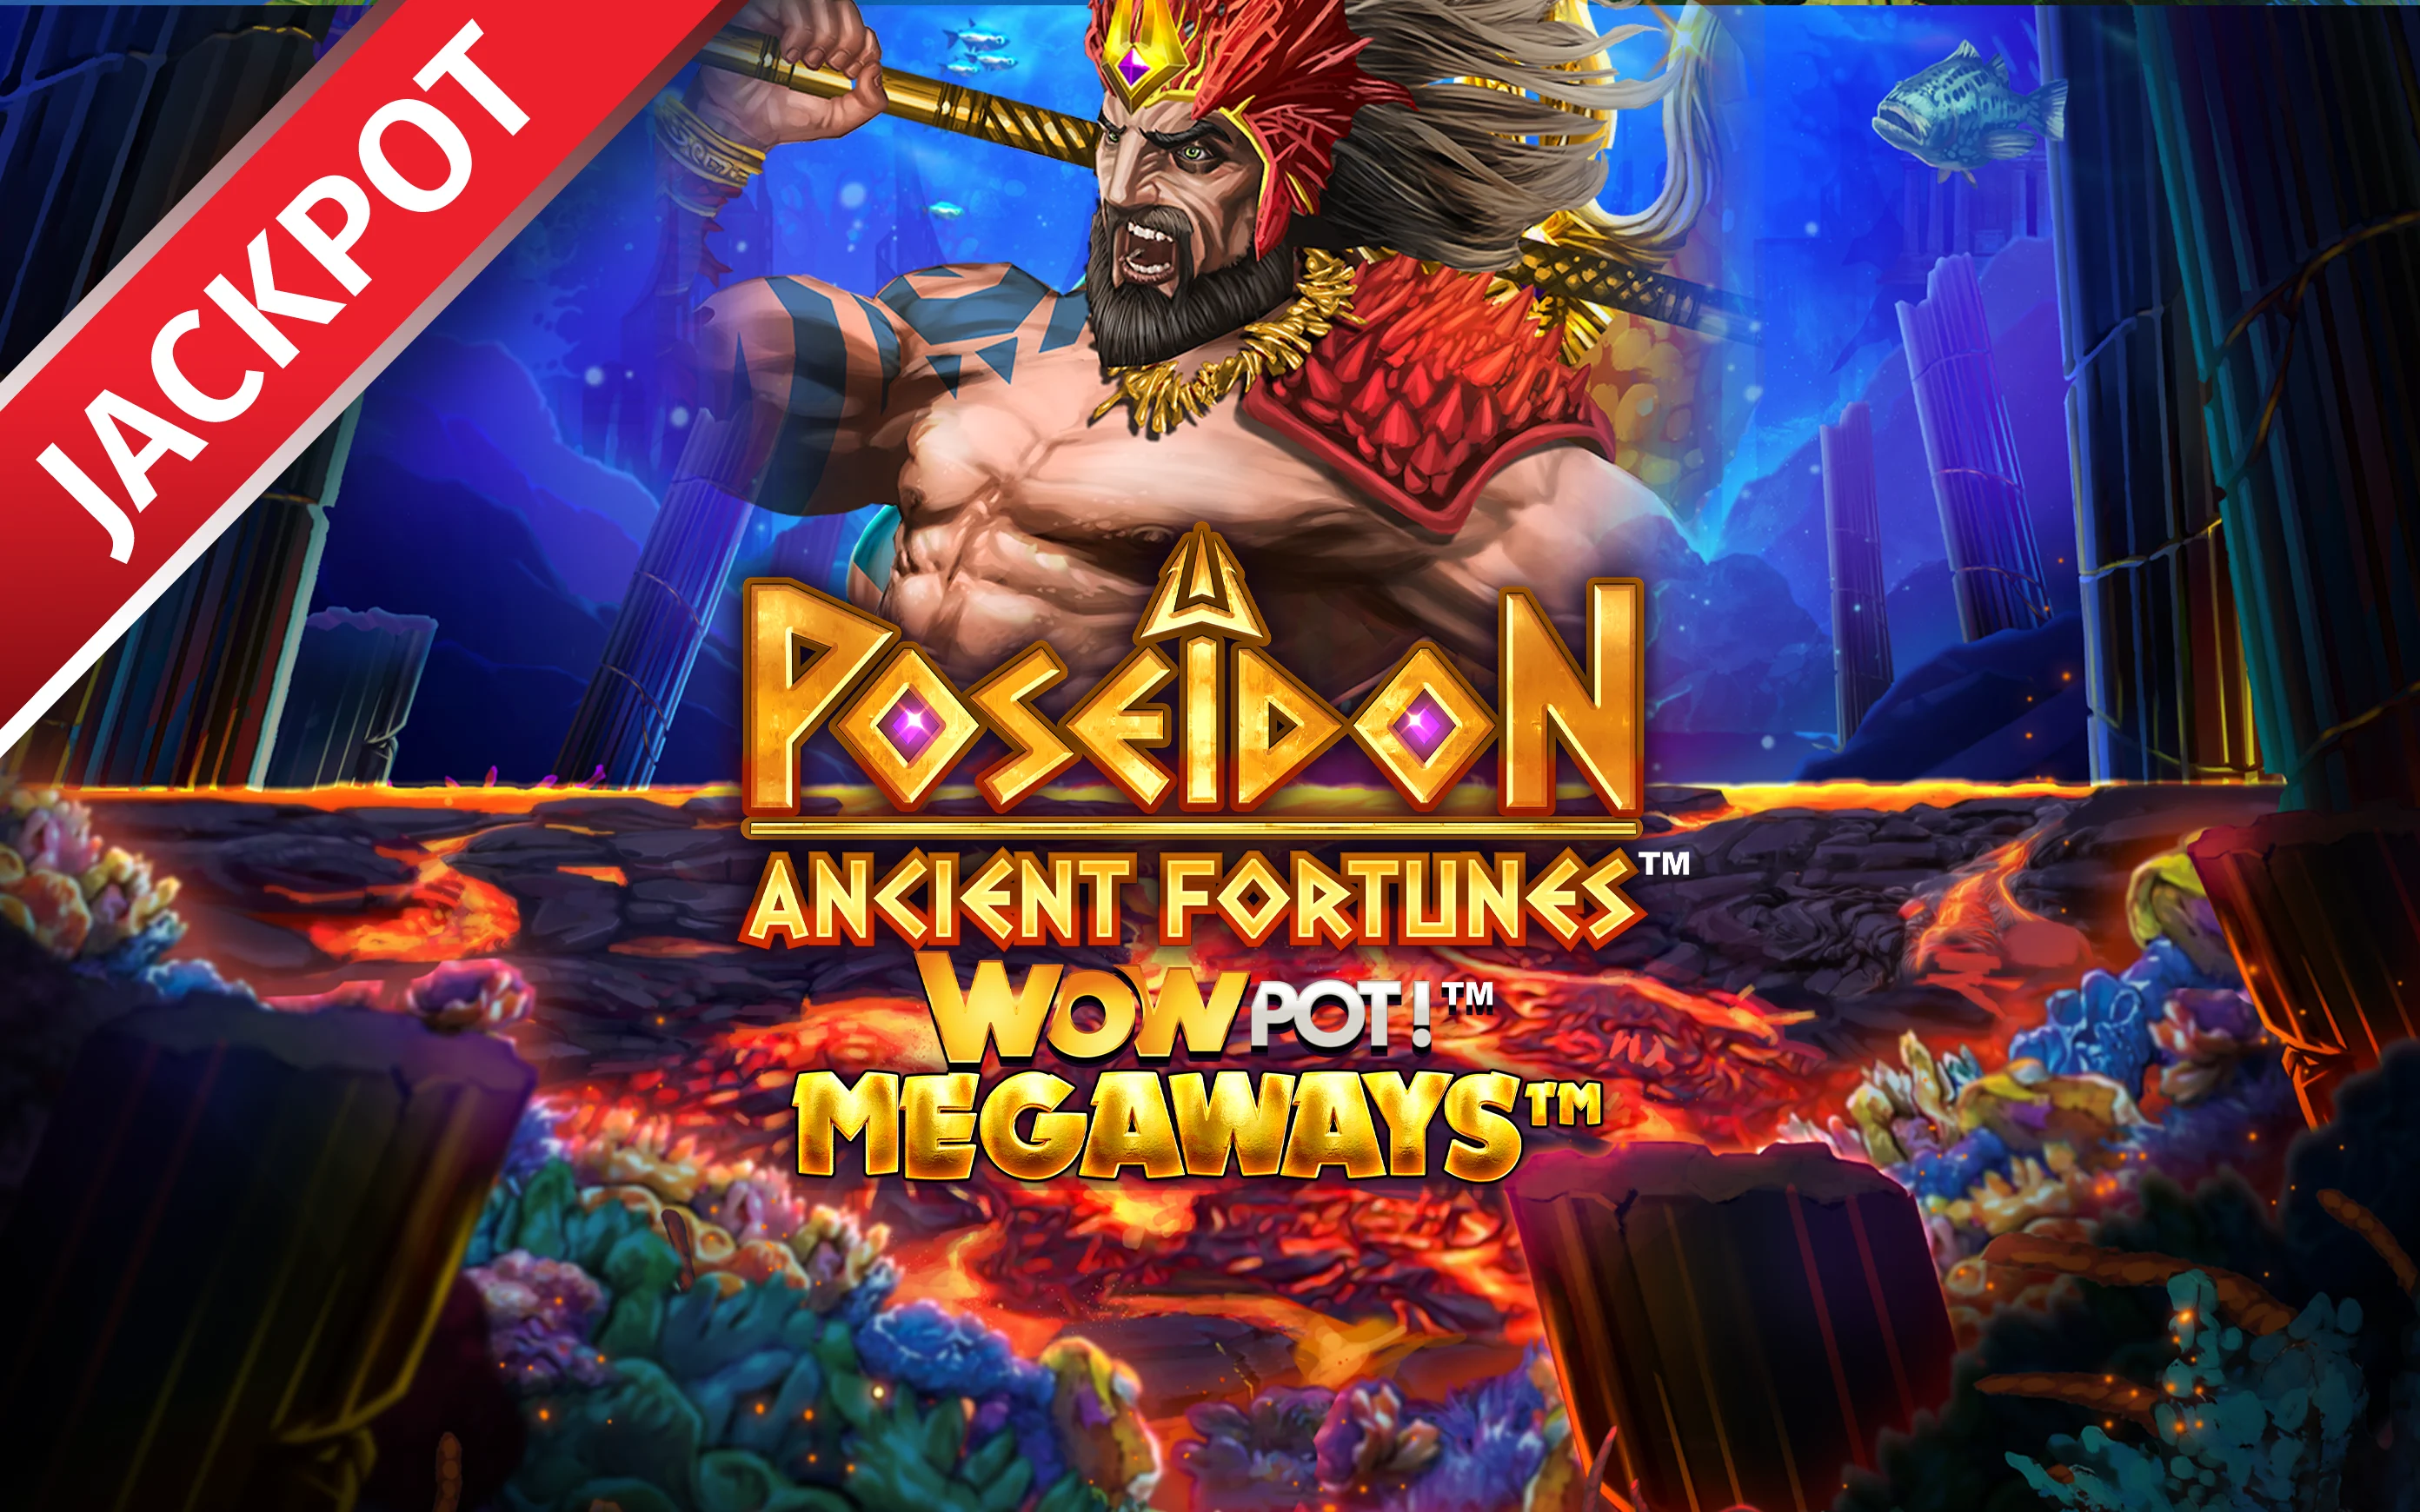 Παίξτε Ancient Fortunes: Poseidon™ WowPot! MEGAWAYS™ στο online καζίνο Starcasino.be